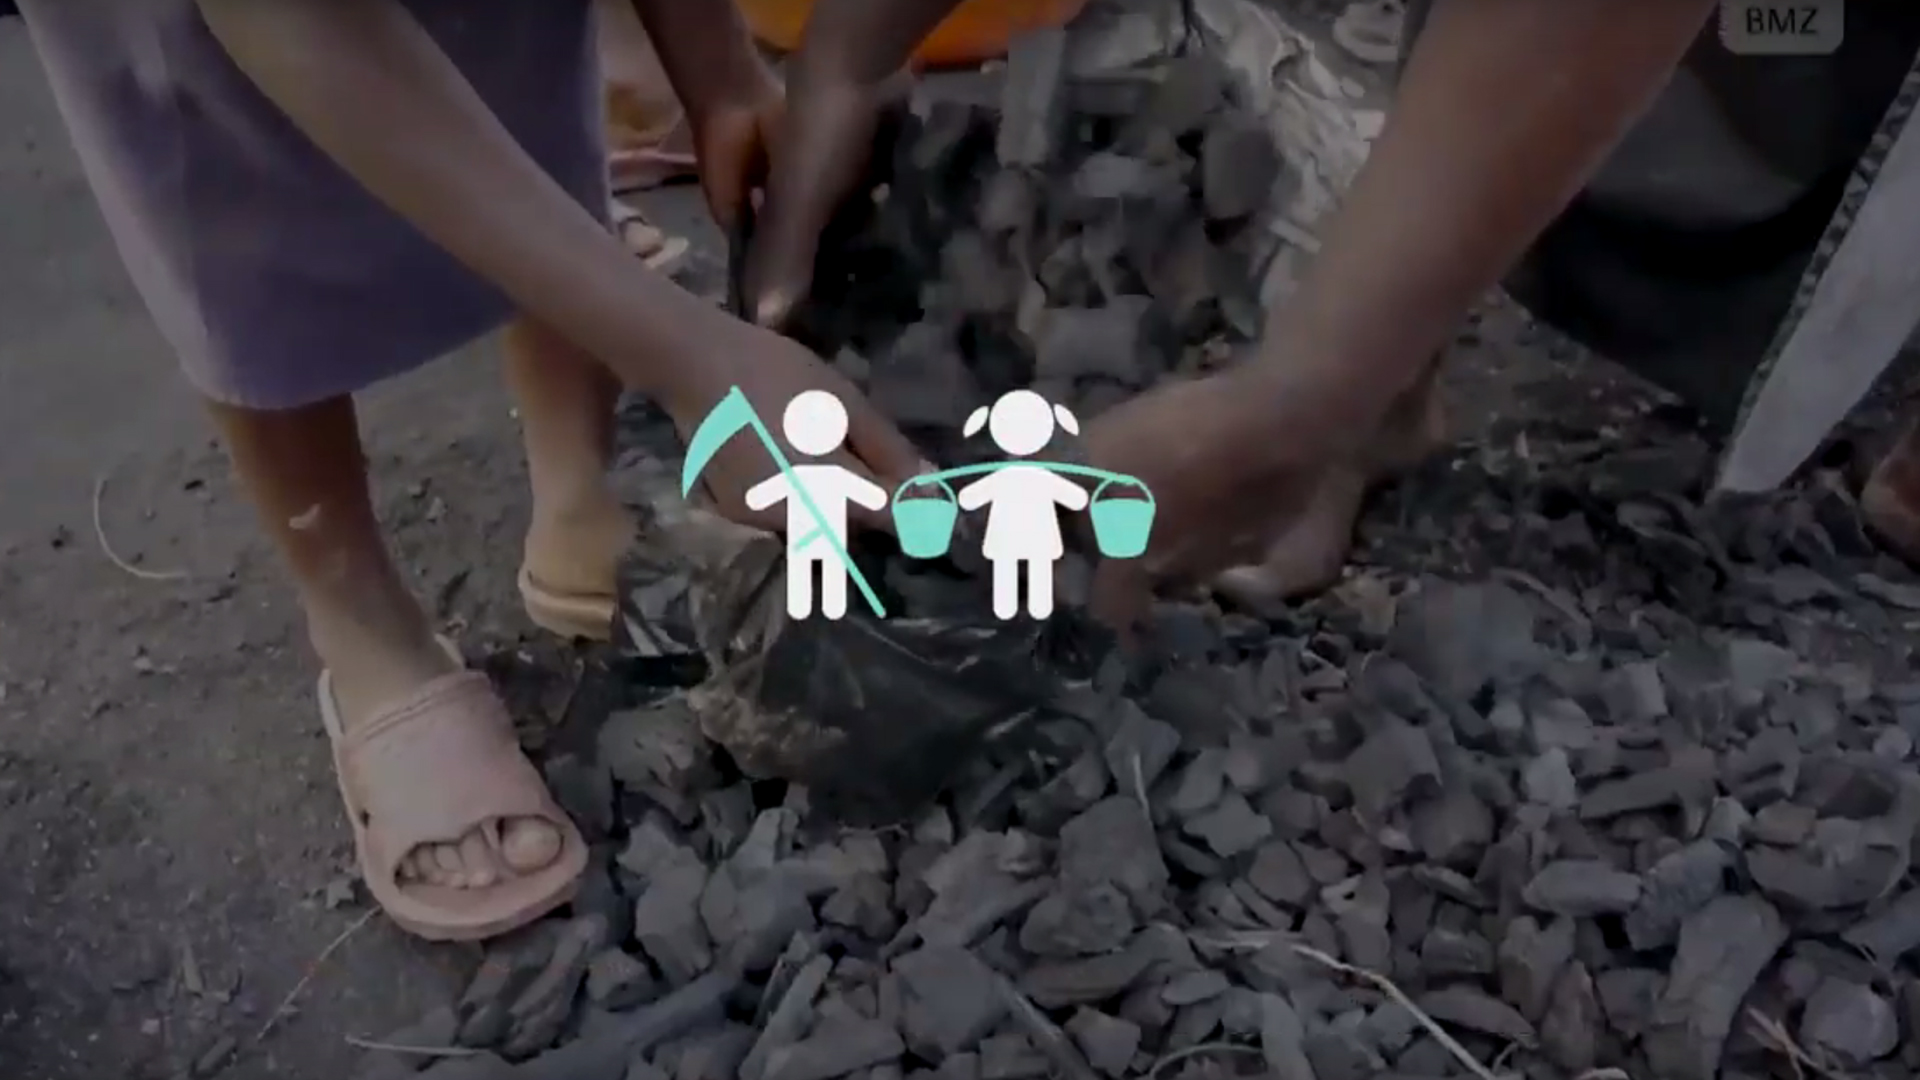 Standbild aus dem BMZ-Video "Deutschlands Einsatz für die Bekämpfung von Kinderarbeit"